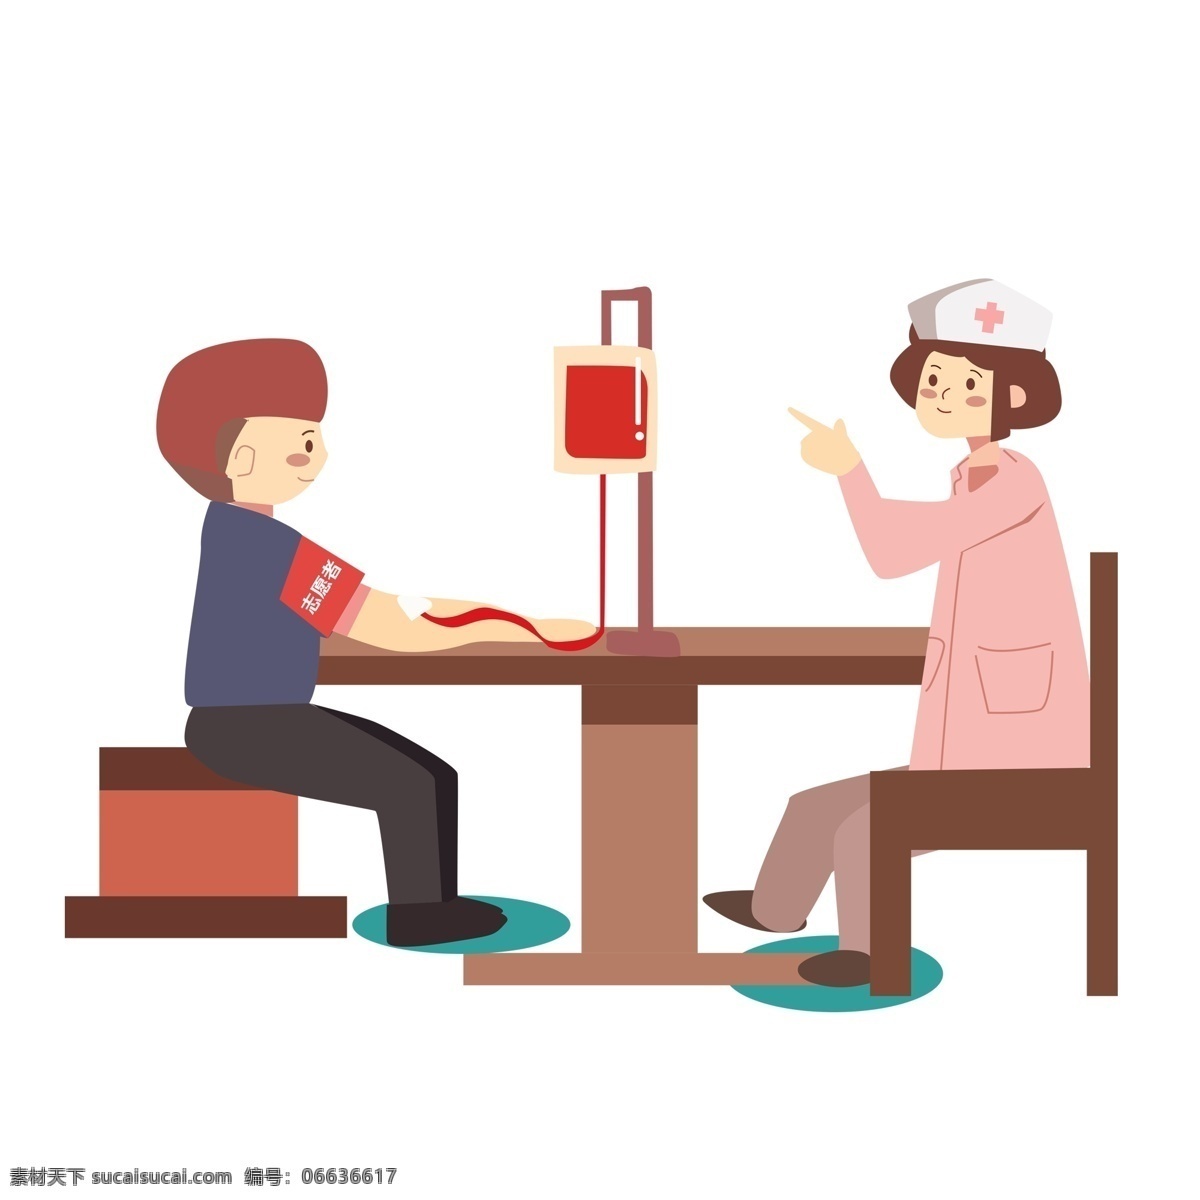 扁平化 献血 场景 商用 元素 卡通 简约 护士 插画 志愿者 人物设计